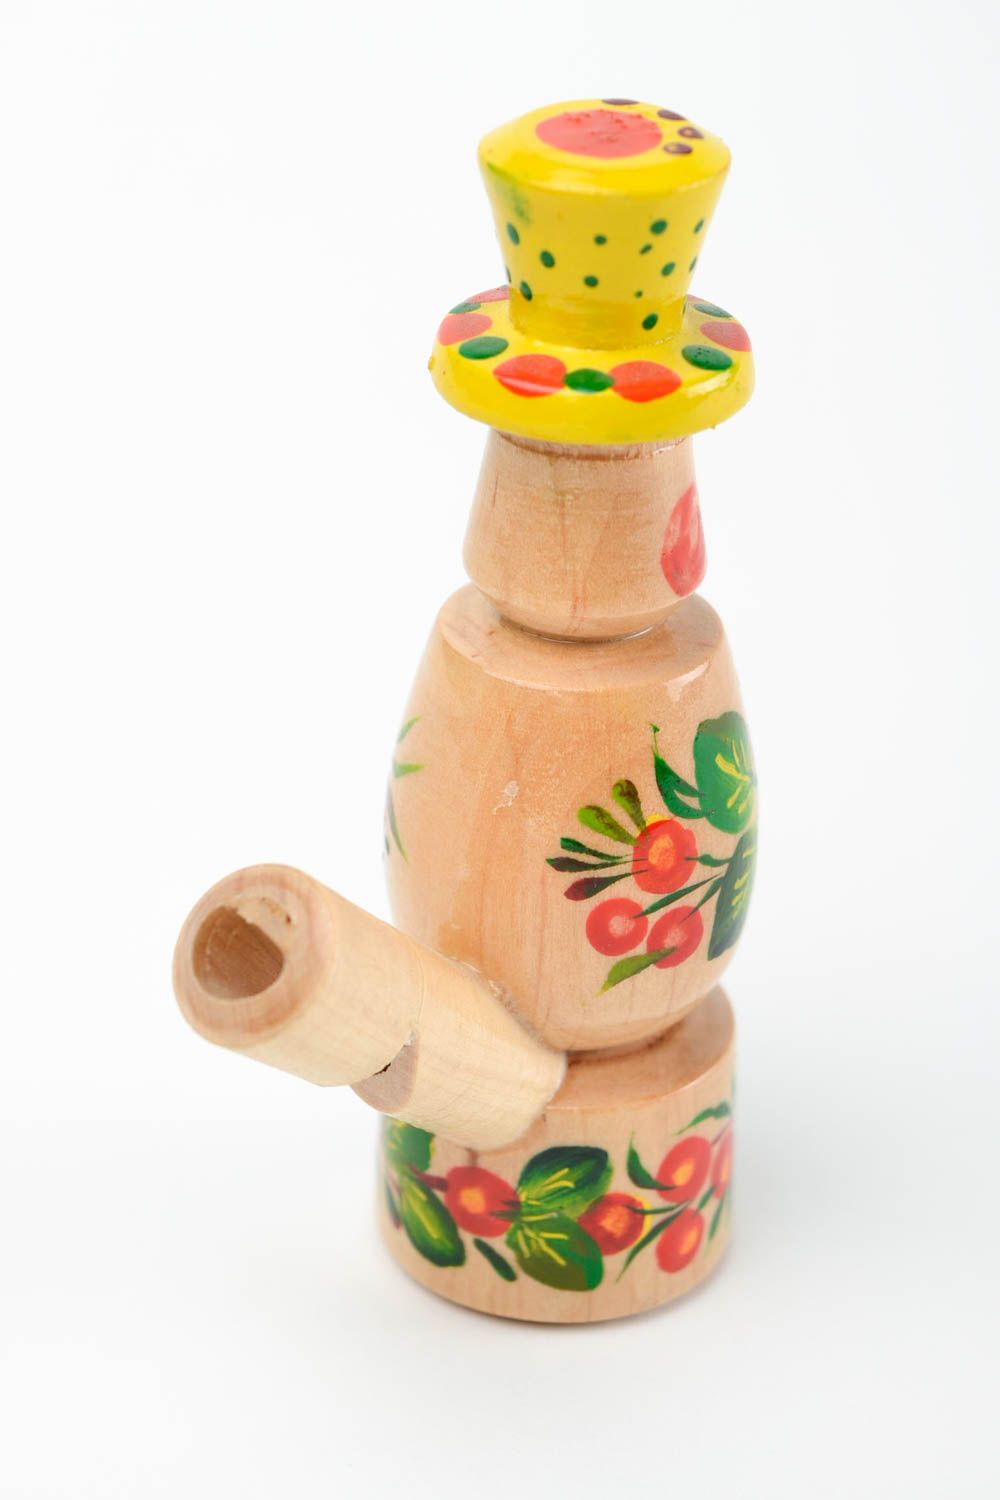 Сувенир из дерева ручной работы подарок ребенку расписная игрушка свистулька фото 5